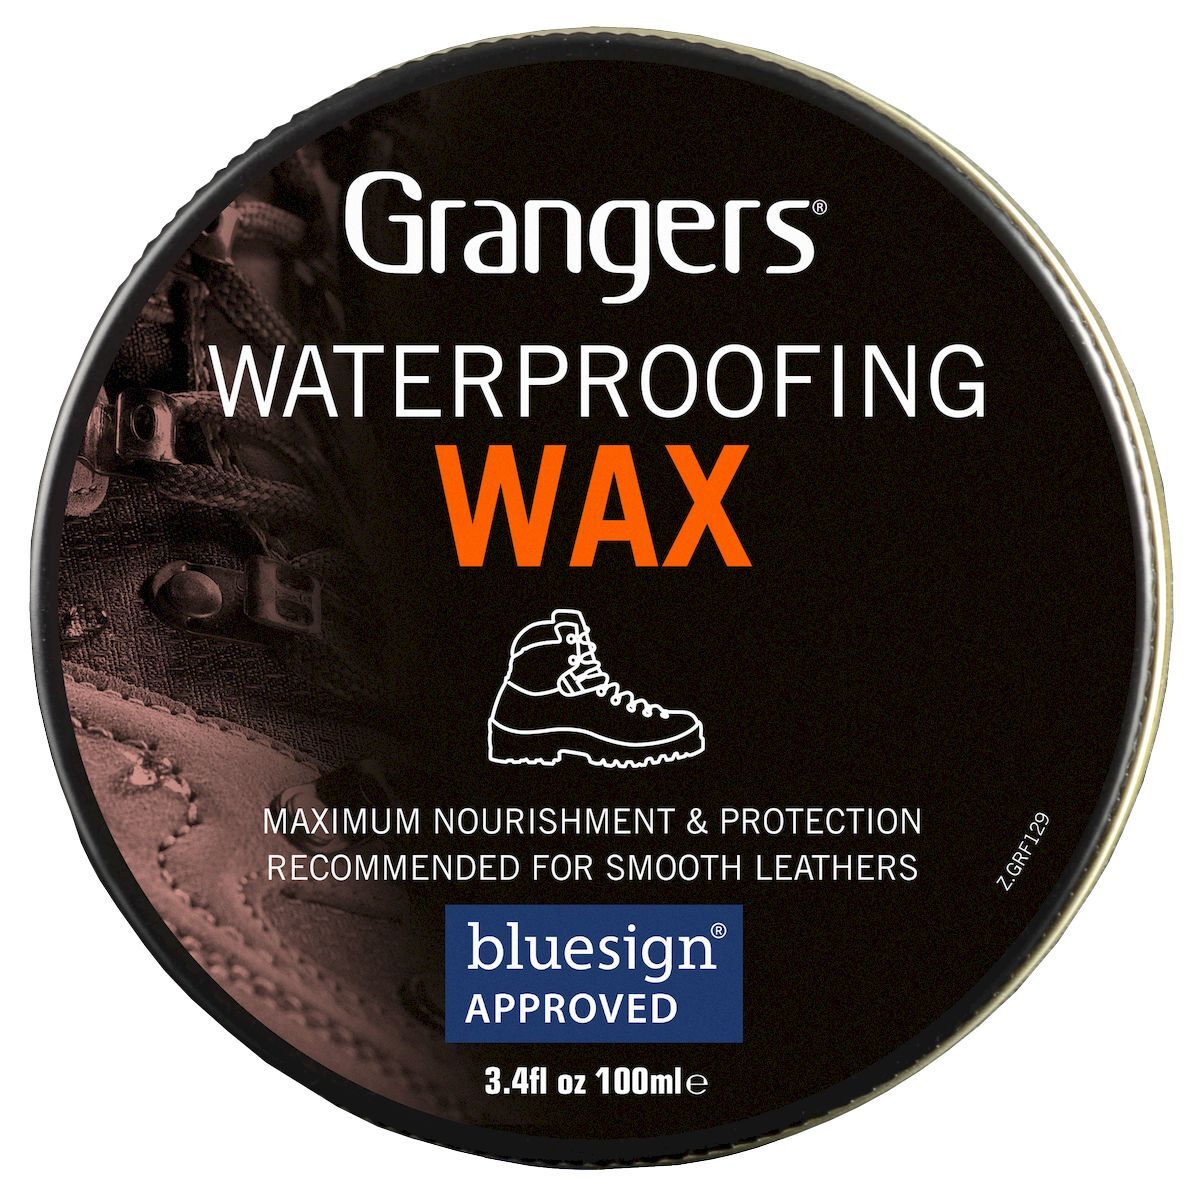 Grangers Waterproofing Wax - DWR Treatment